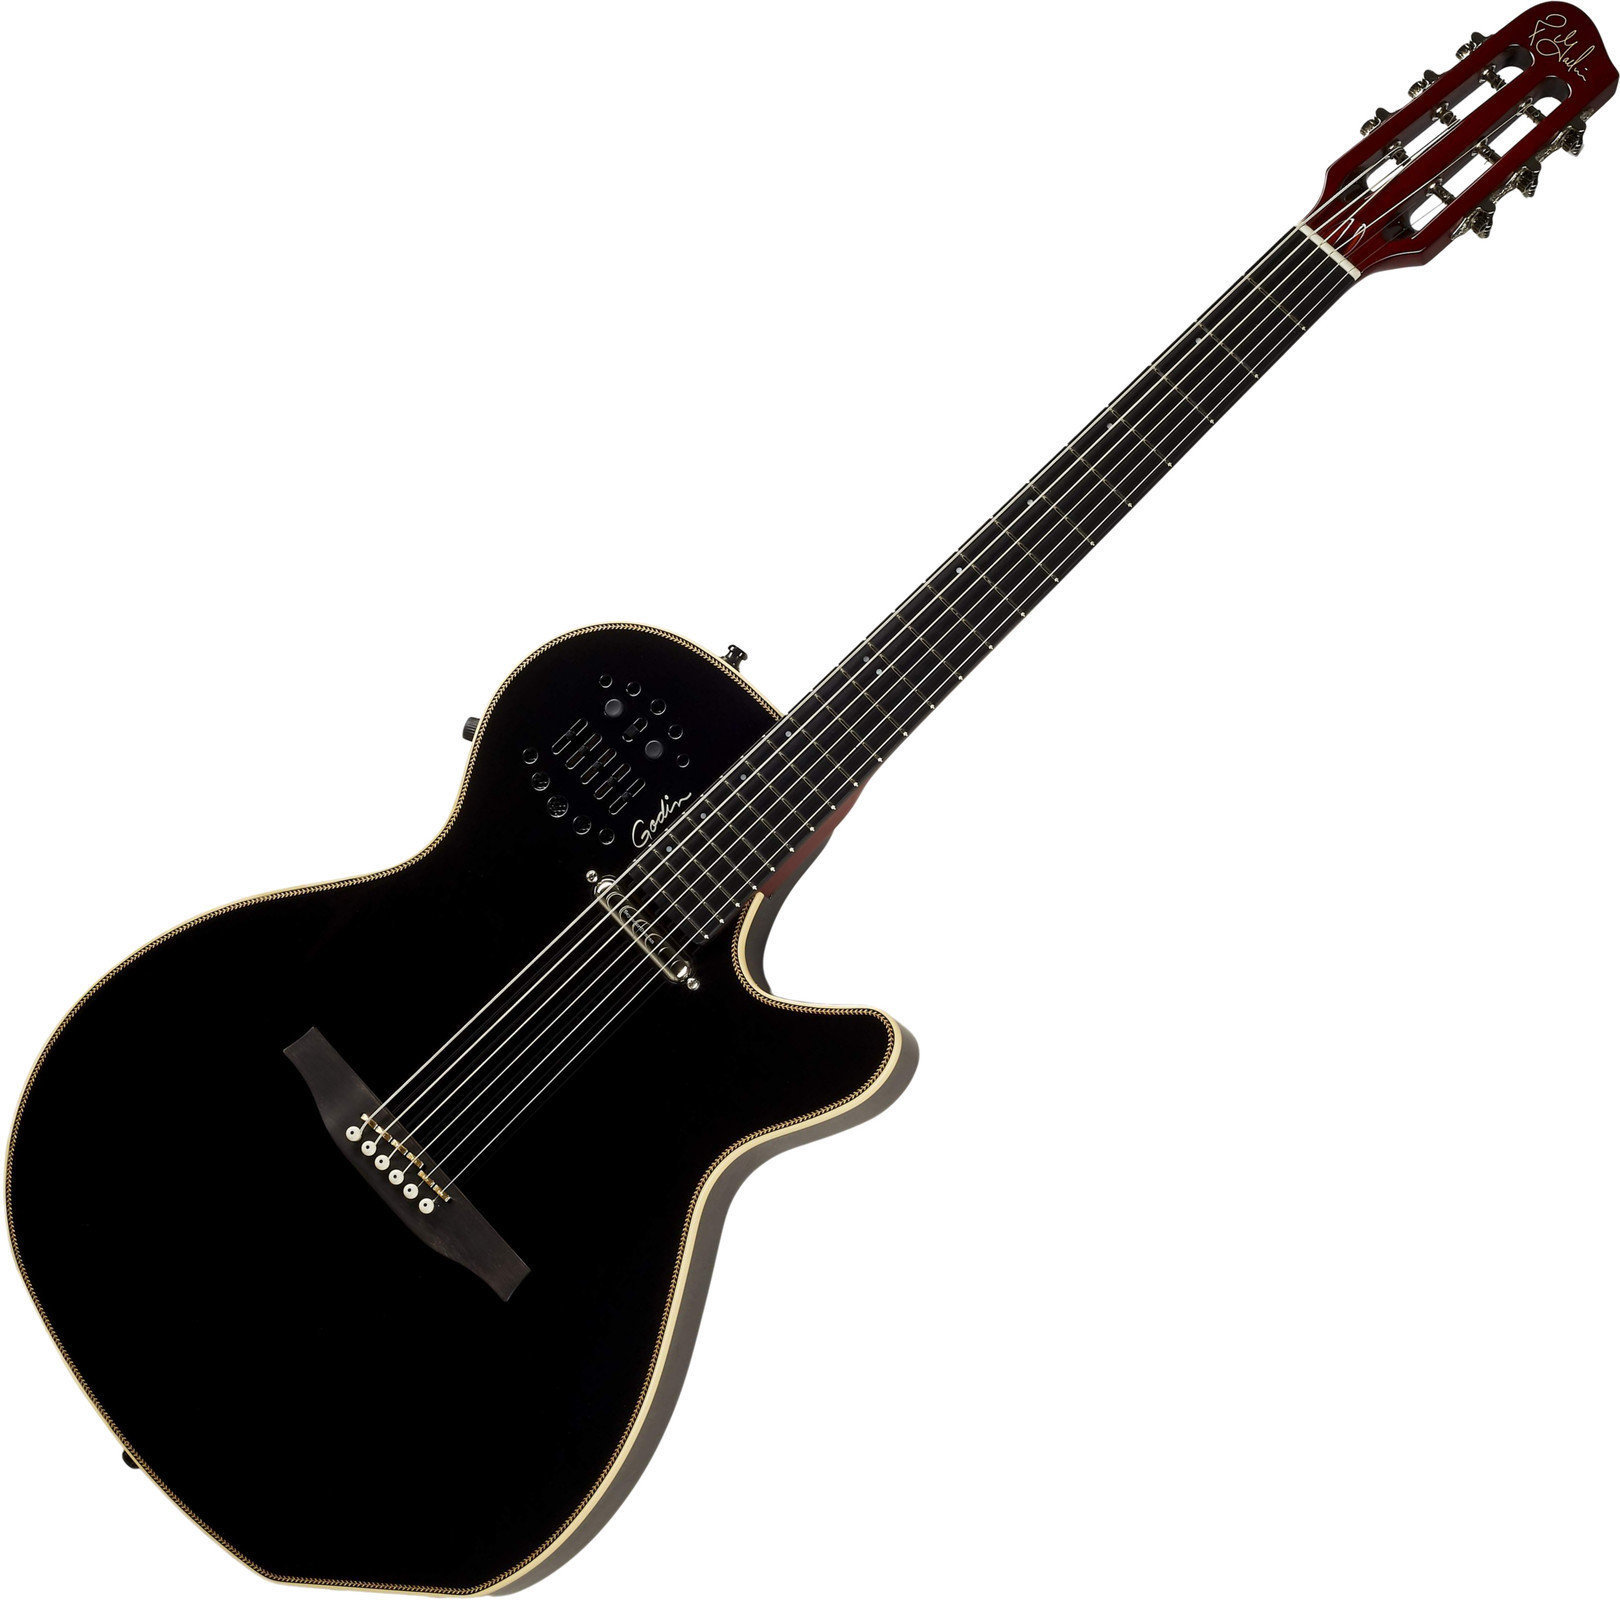 Ηλεκτροακουστική Κιθάρα Godin Multiac Spectrum SA Black HG